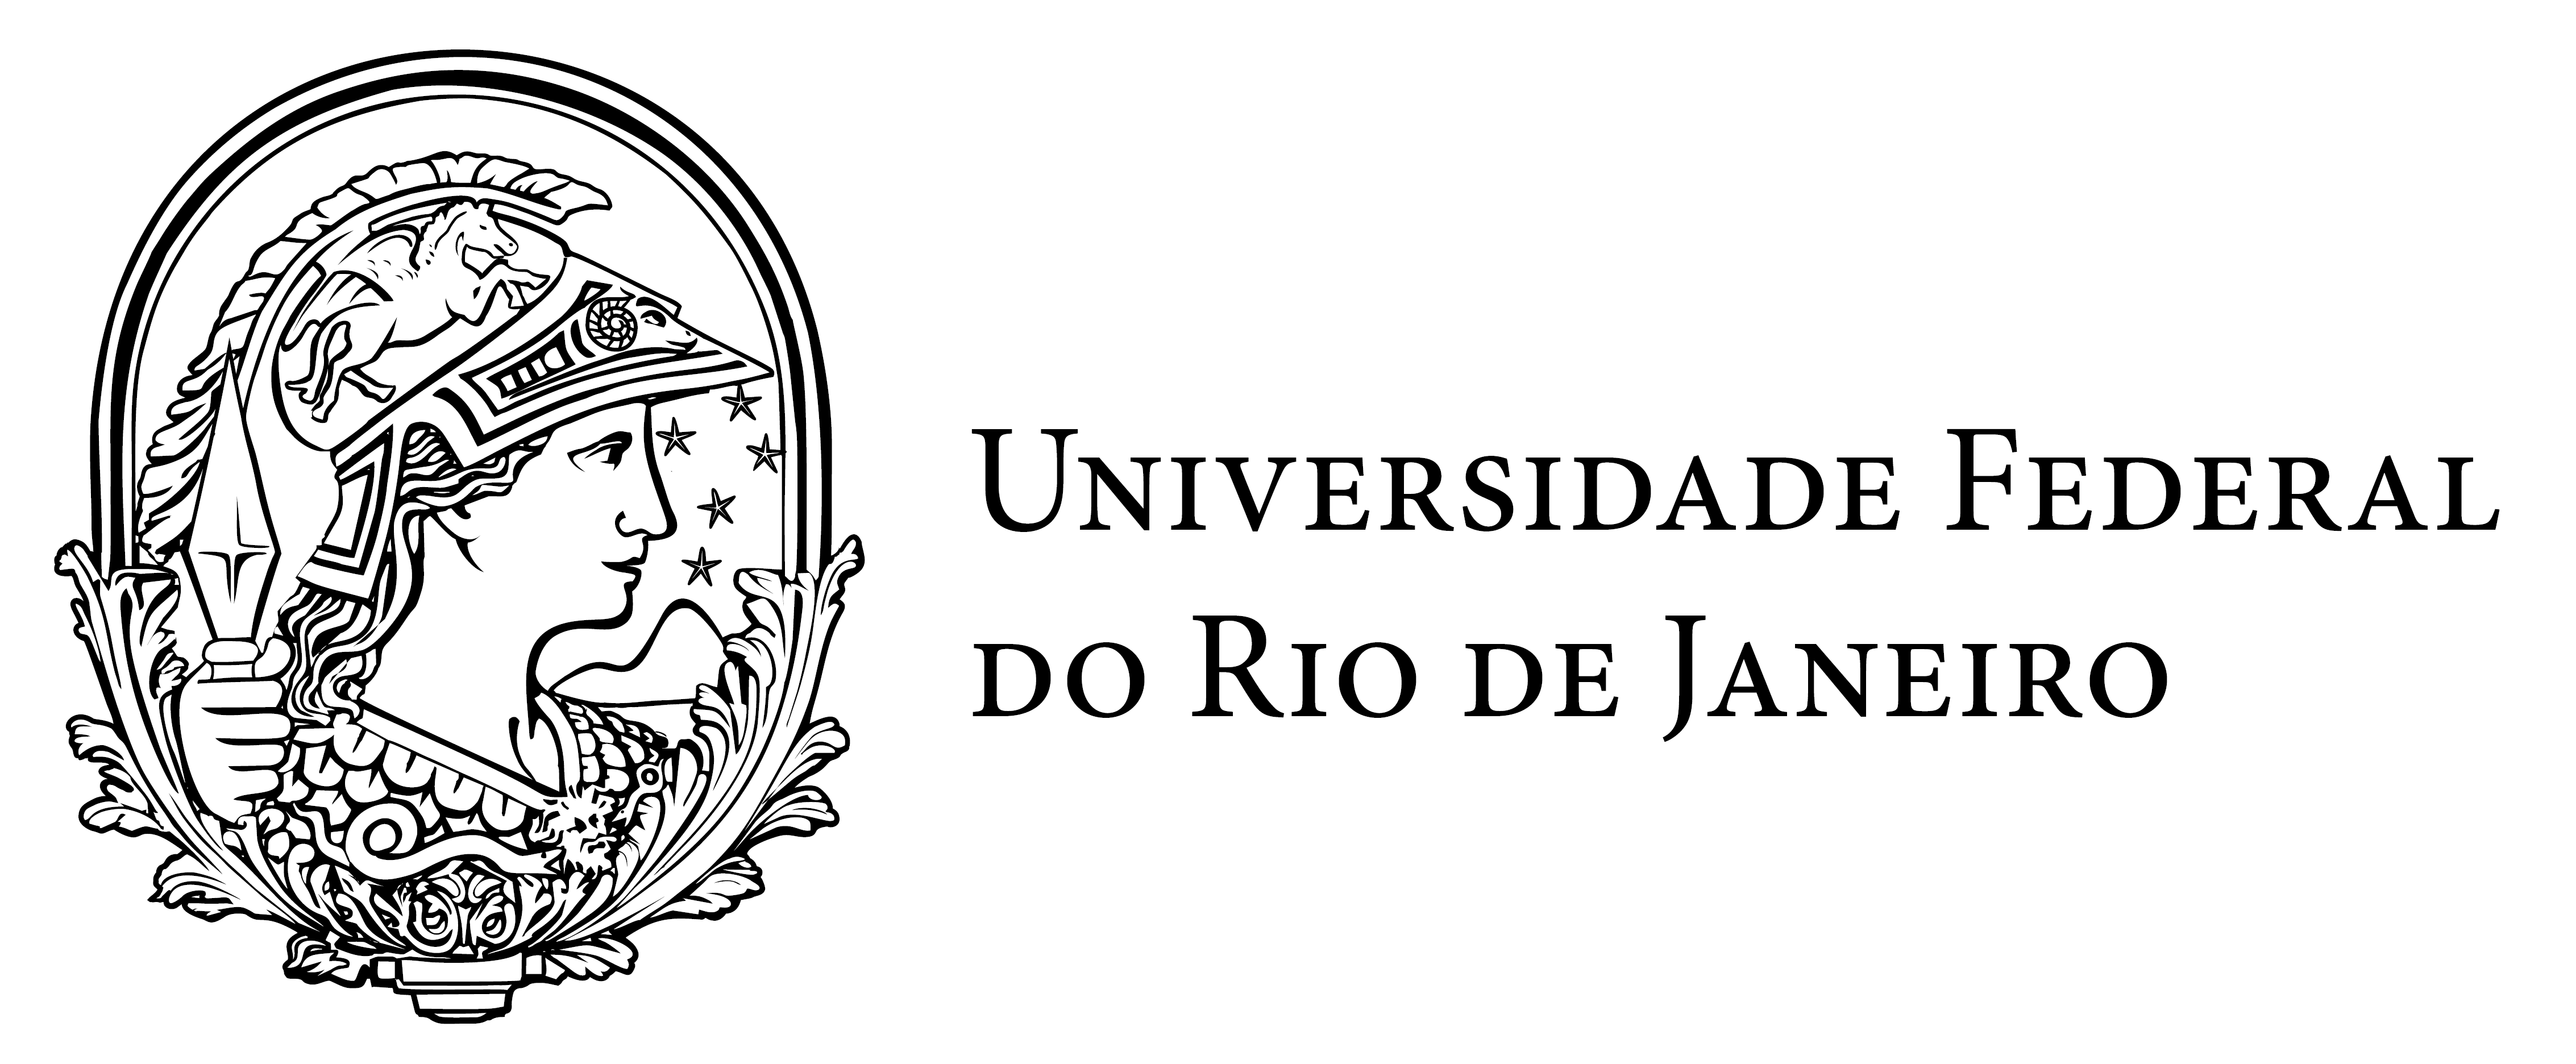 UFR JLogo, Universidade Federal do Rio de Janeiro Logo.